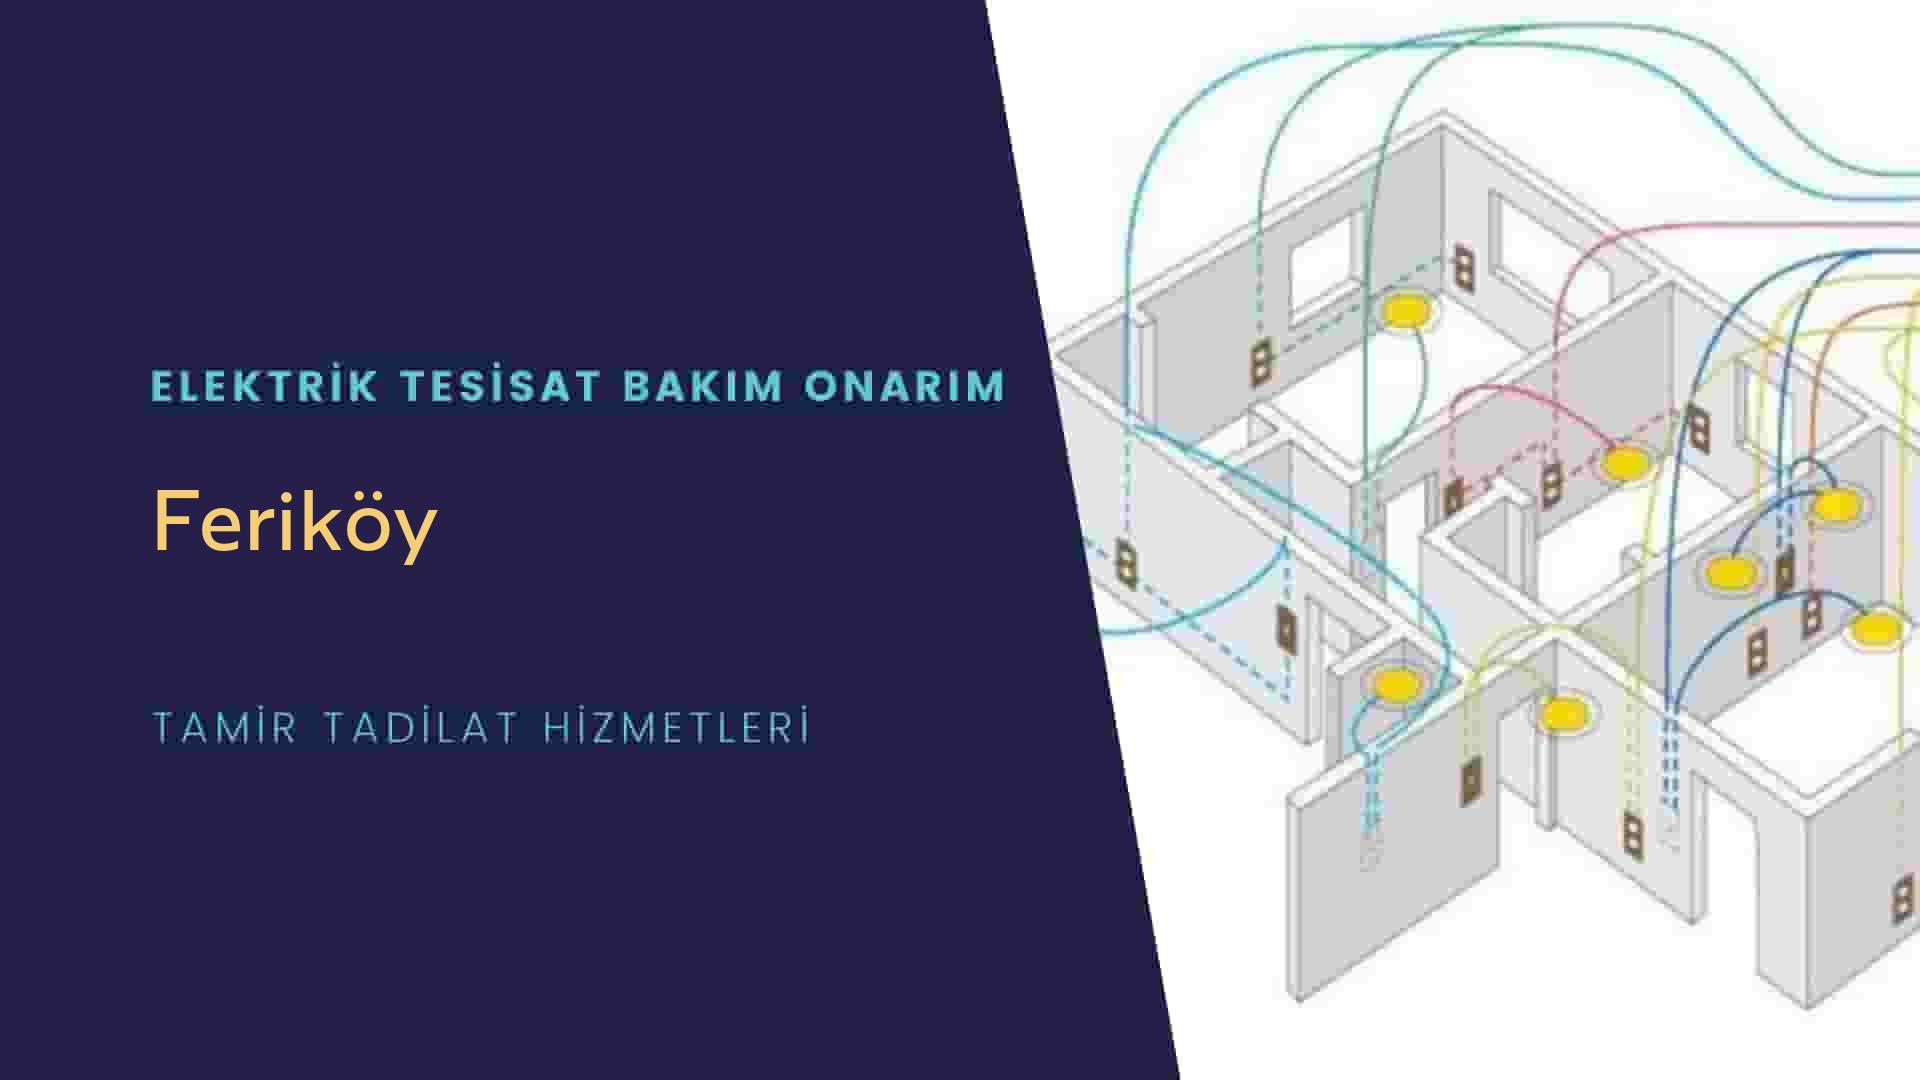 Feriköy'de elektrik tesisatı ustalarımı arıyorsunuz doğru adrestenizi Feriköy elektrik tesisatı ustalarımız 7/24 sizlere hizmet vermekten mutluluk duyar.